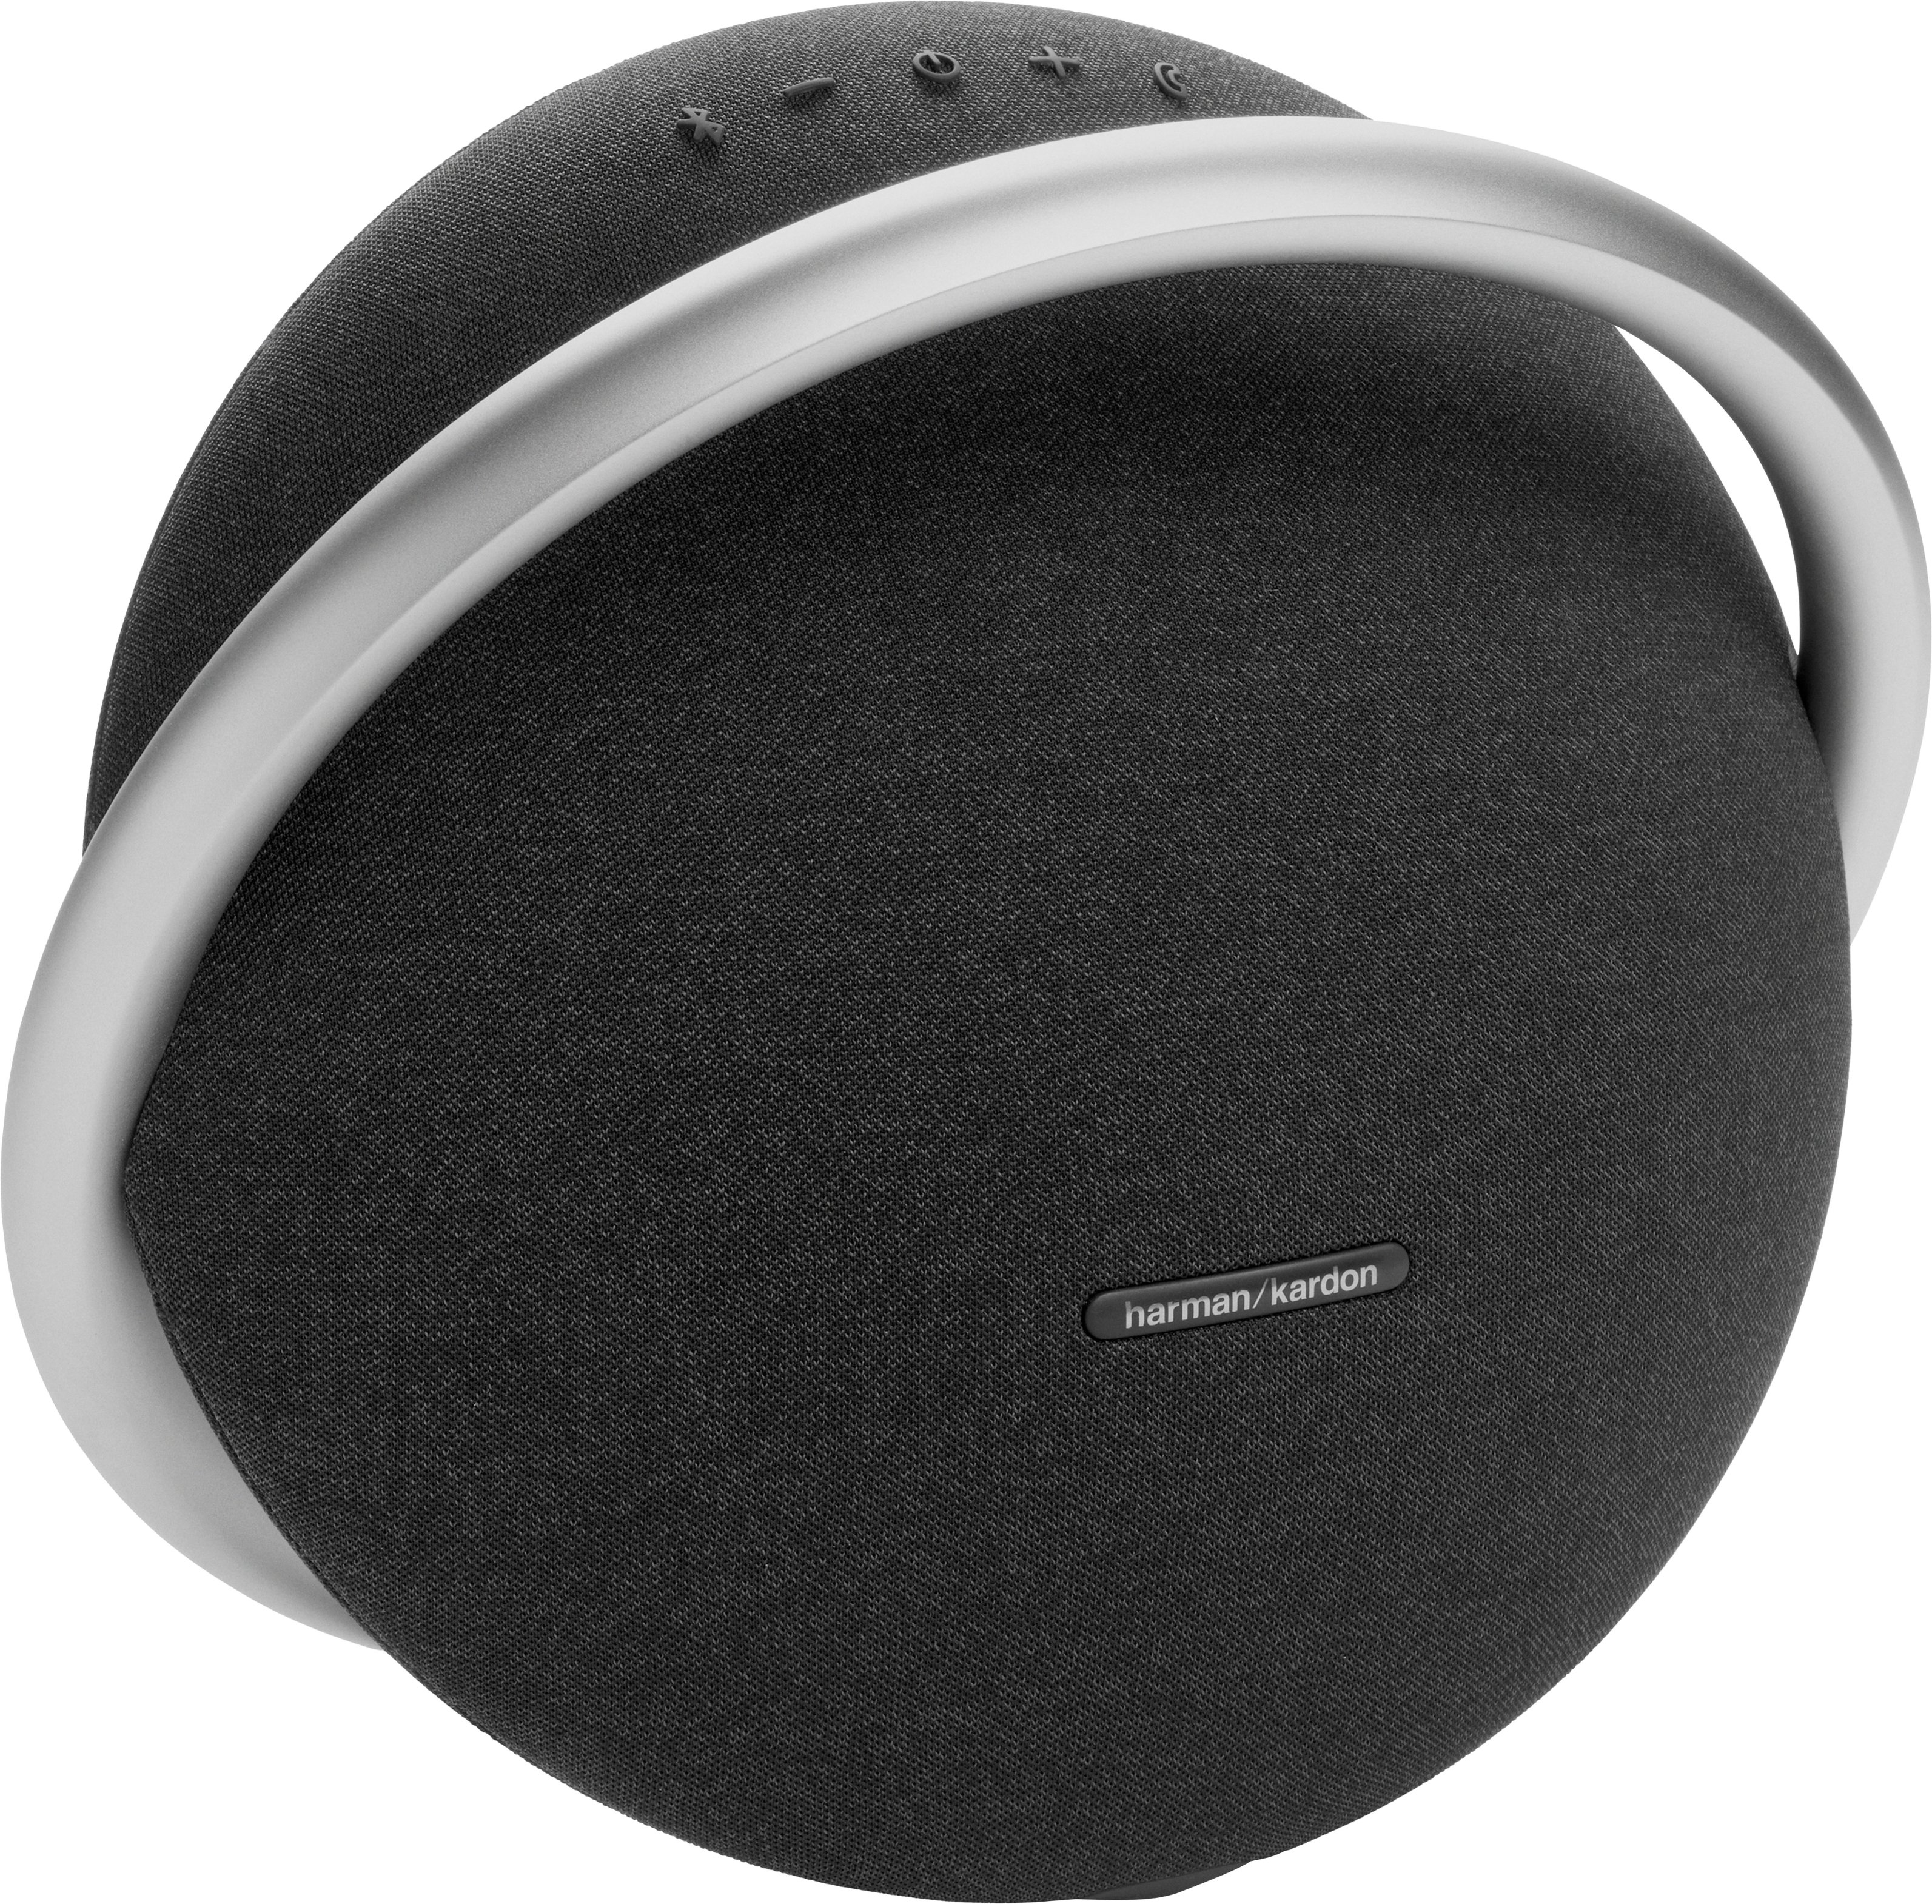 Gemeenten Ithaca Ik heb het erkend JBL Onyx Studio 7 Portable Stereo Bluetooth Speaker Black HKOS7BLKAM - Best  Buy